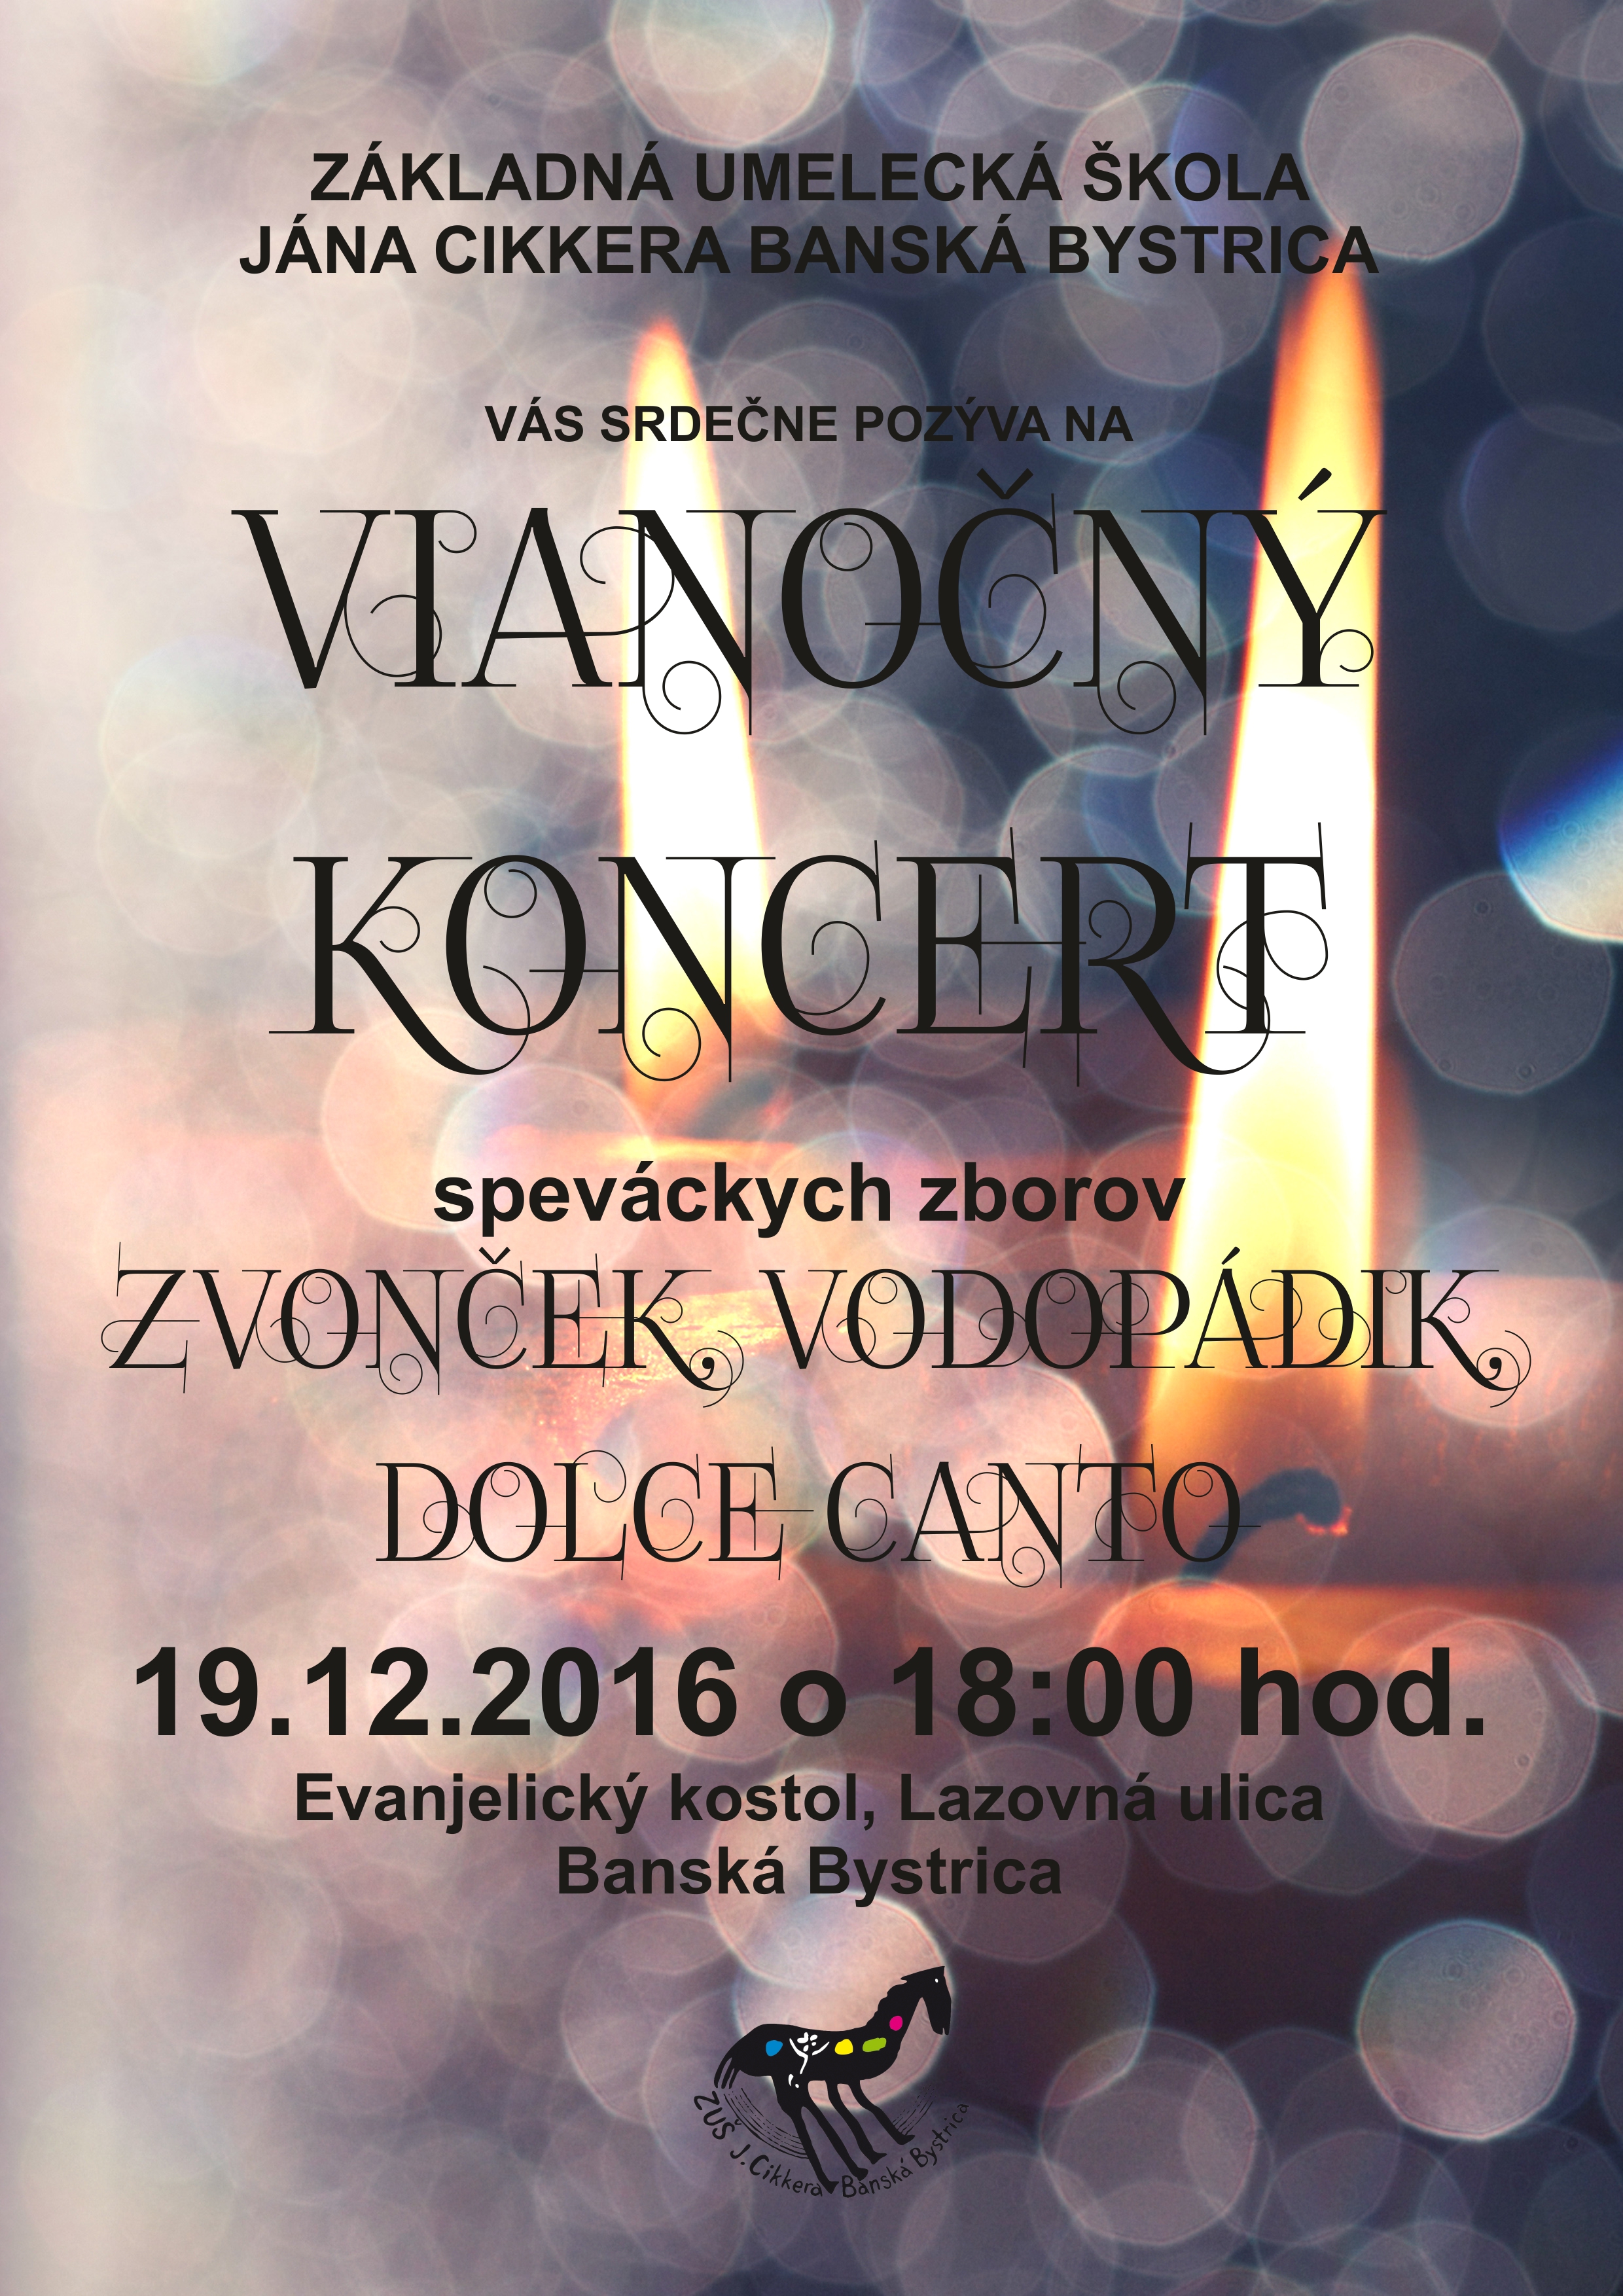 Vianočný koncert 19.12.2016